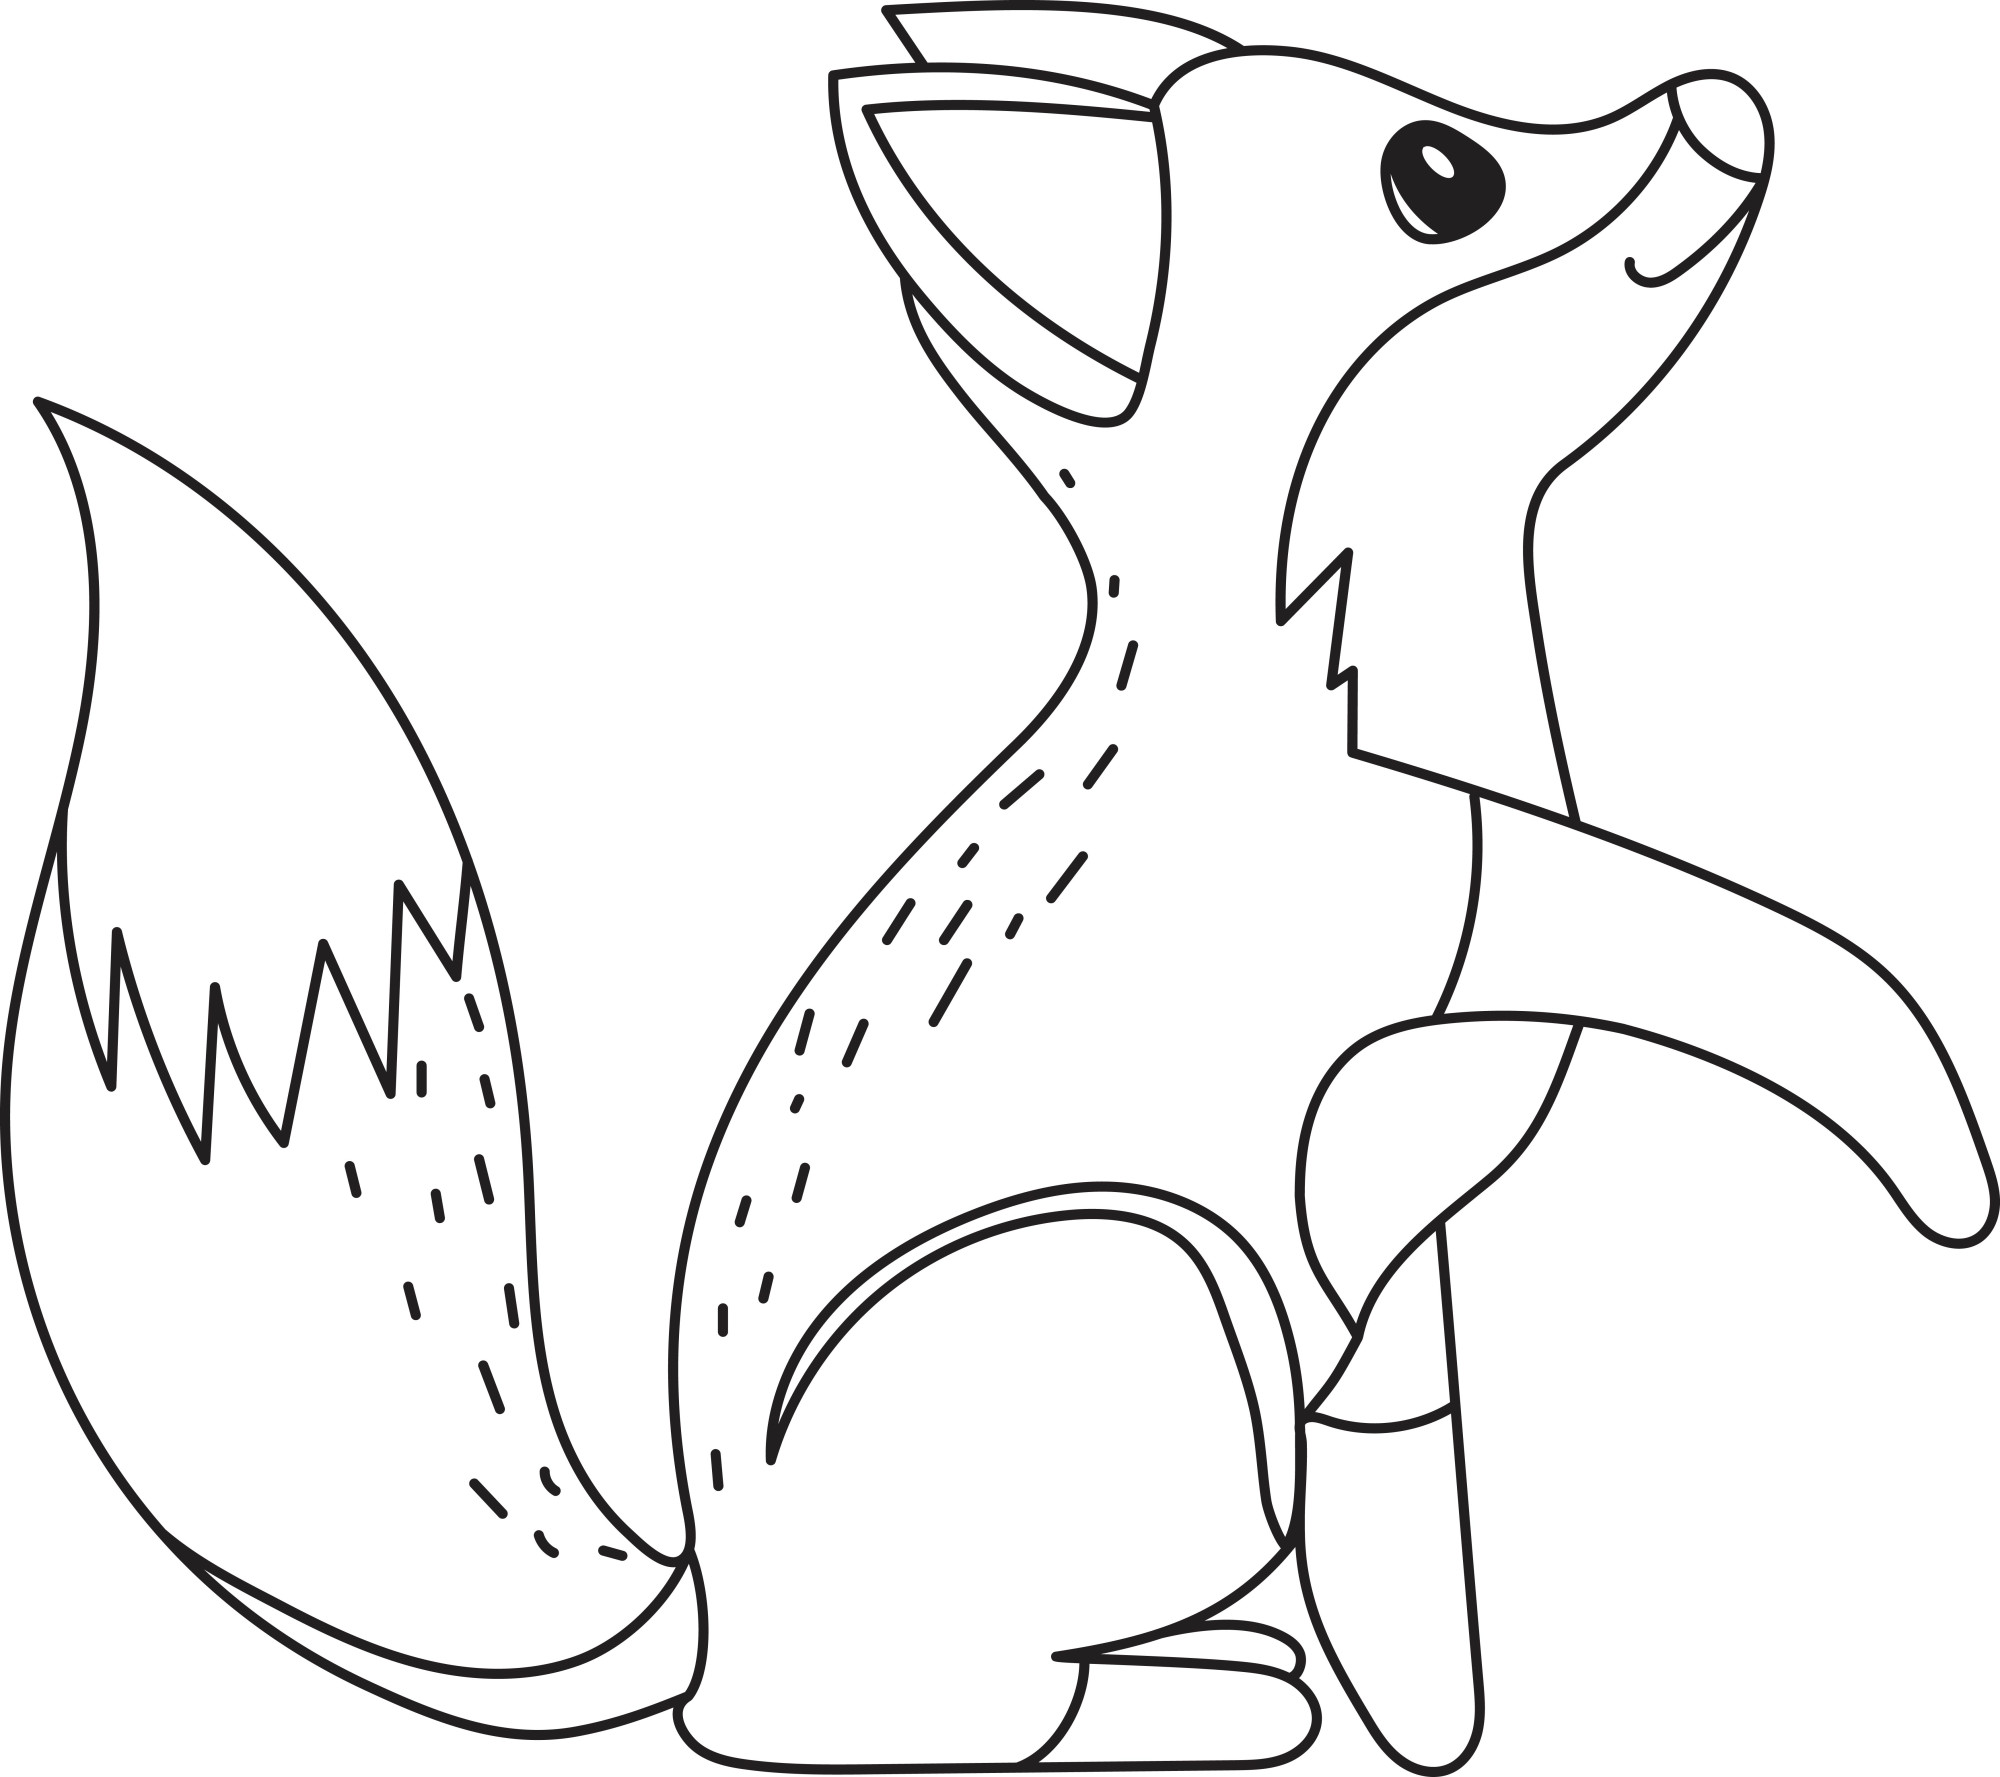 Раскраска для детей: лисичка с поднятой лапкой